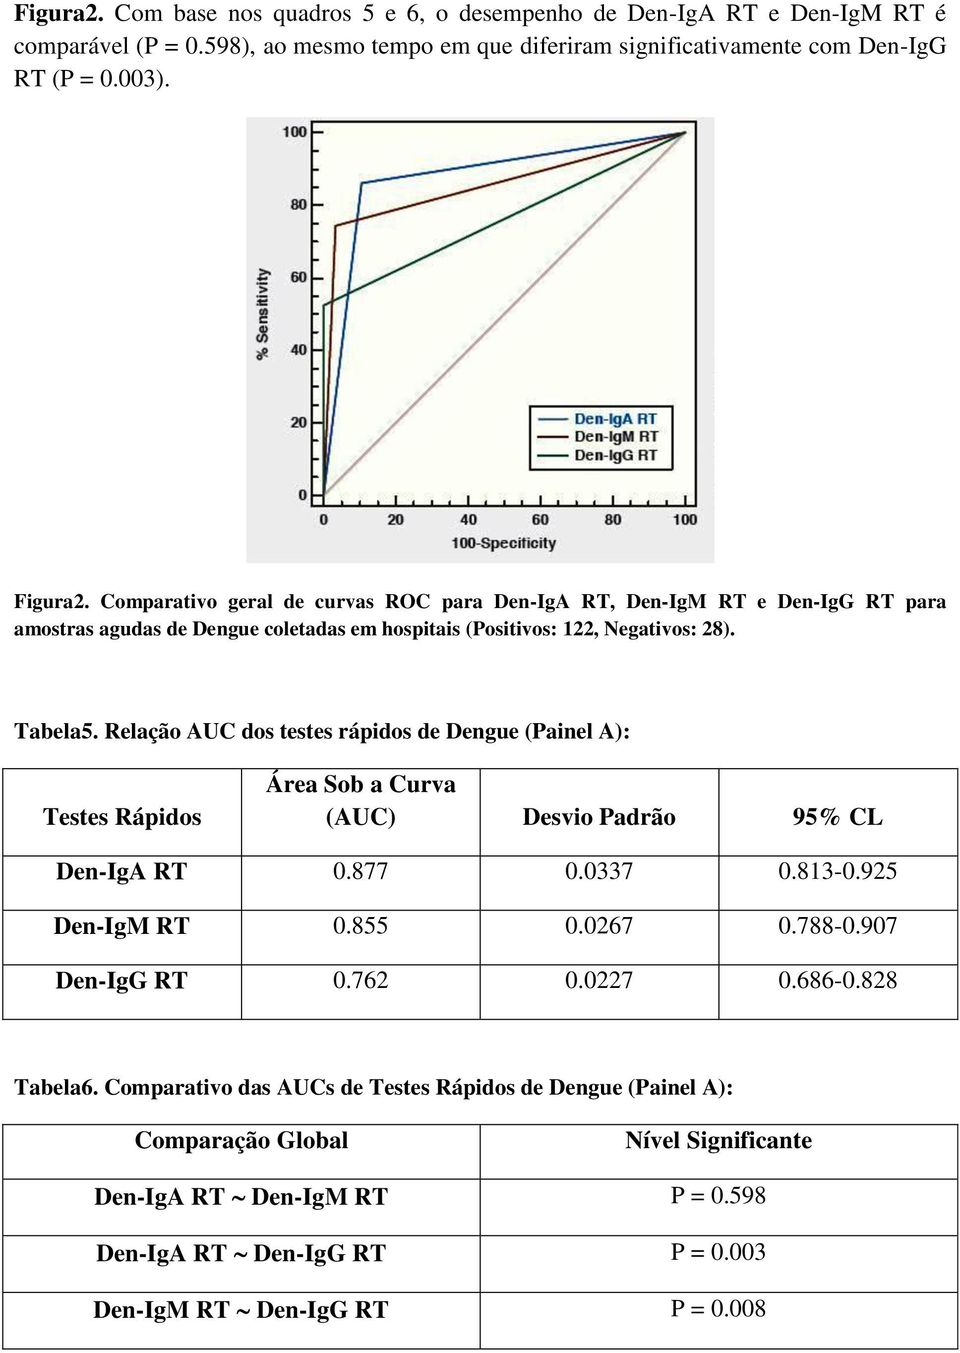 Comparativo geral de curvas ROC para Den-IgA RT, Den-IgM RT e Den-IgG RT para amostras agudas de Dengue coletadas em hospitais (Positivos: 122, Negativos: 28). Tabela5.